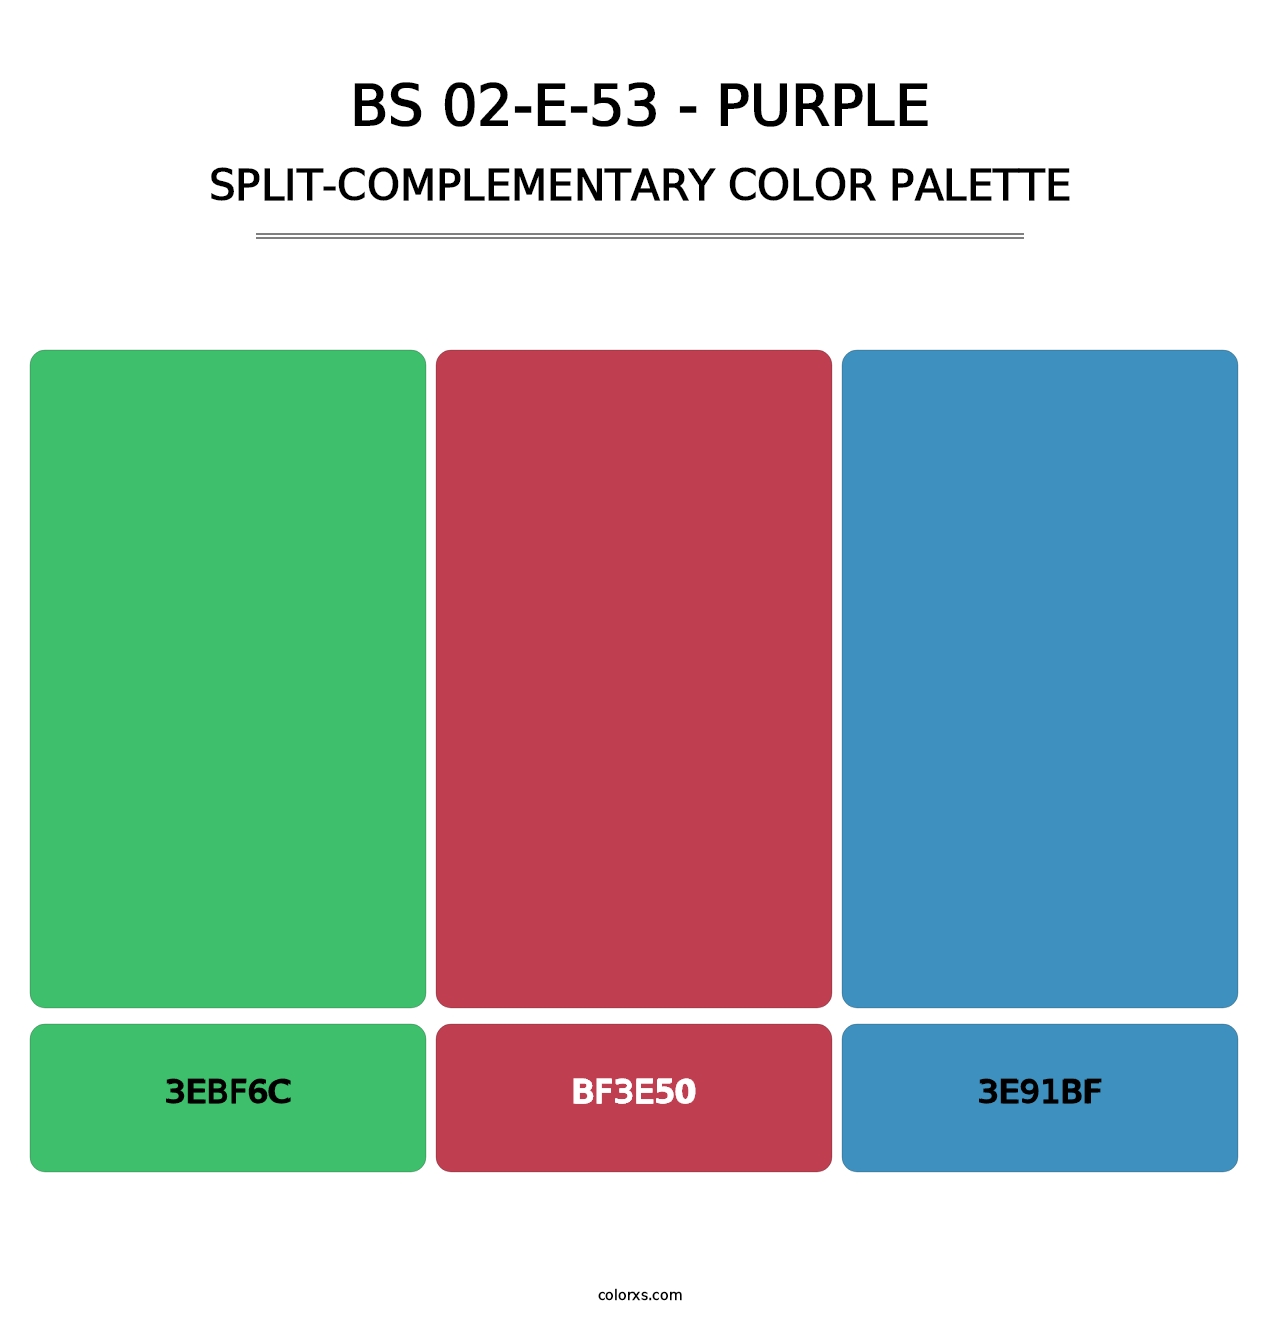 BS 02-E-53 - Purple - Split-Complementary Color Palette